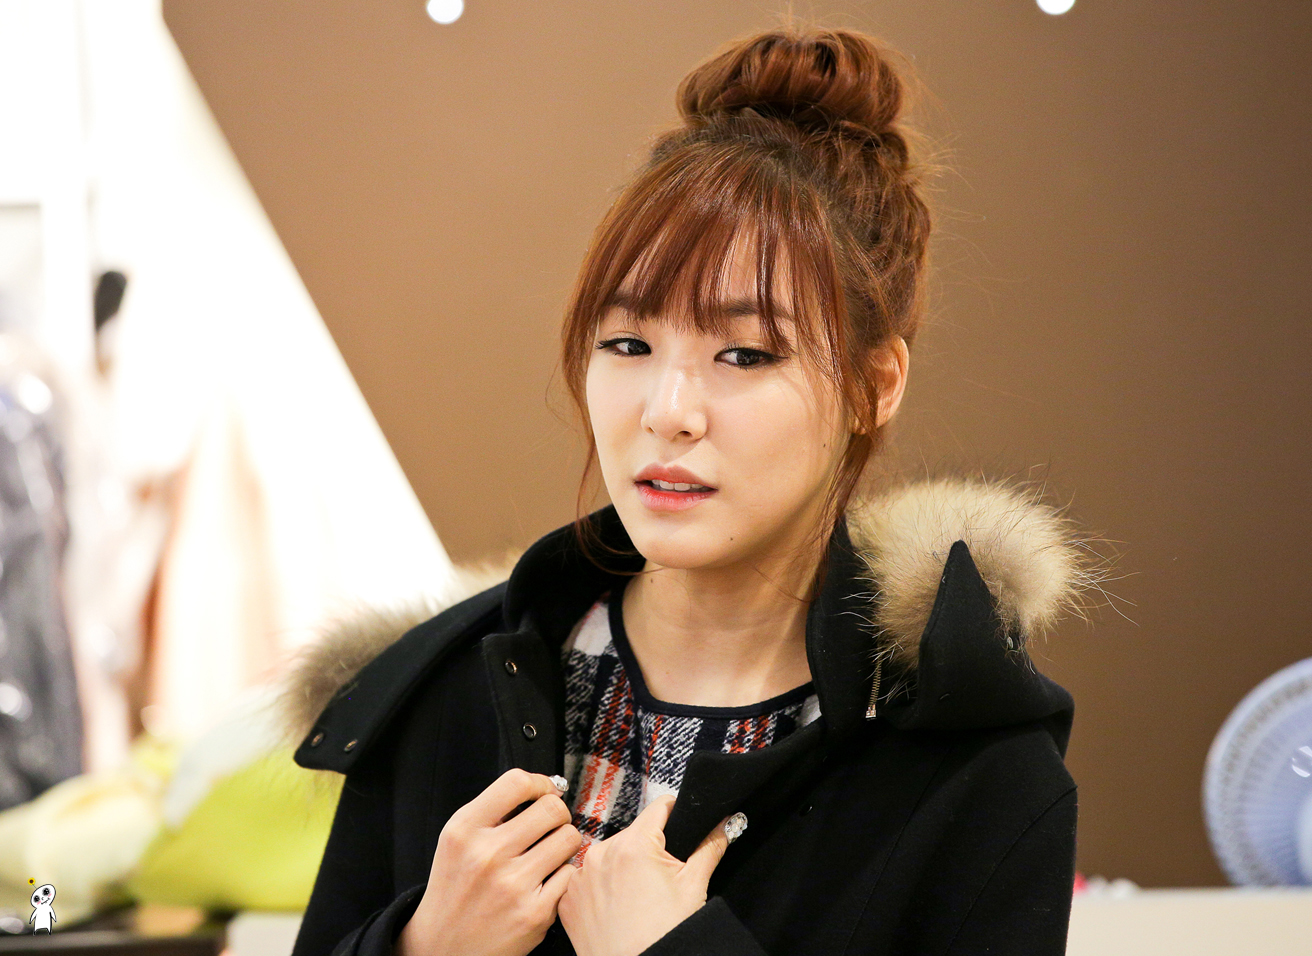 [PIC][28-11-2013]Tiffany ghé thăm cửa hàng "QUA" ở Hyundai Department Store vào trưa nay - Page 3 2408FF4052980CAD20BE4F